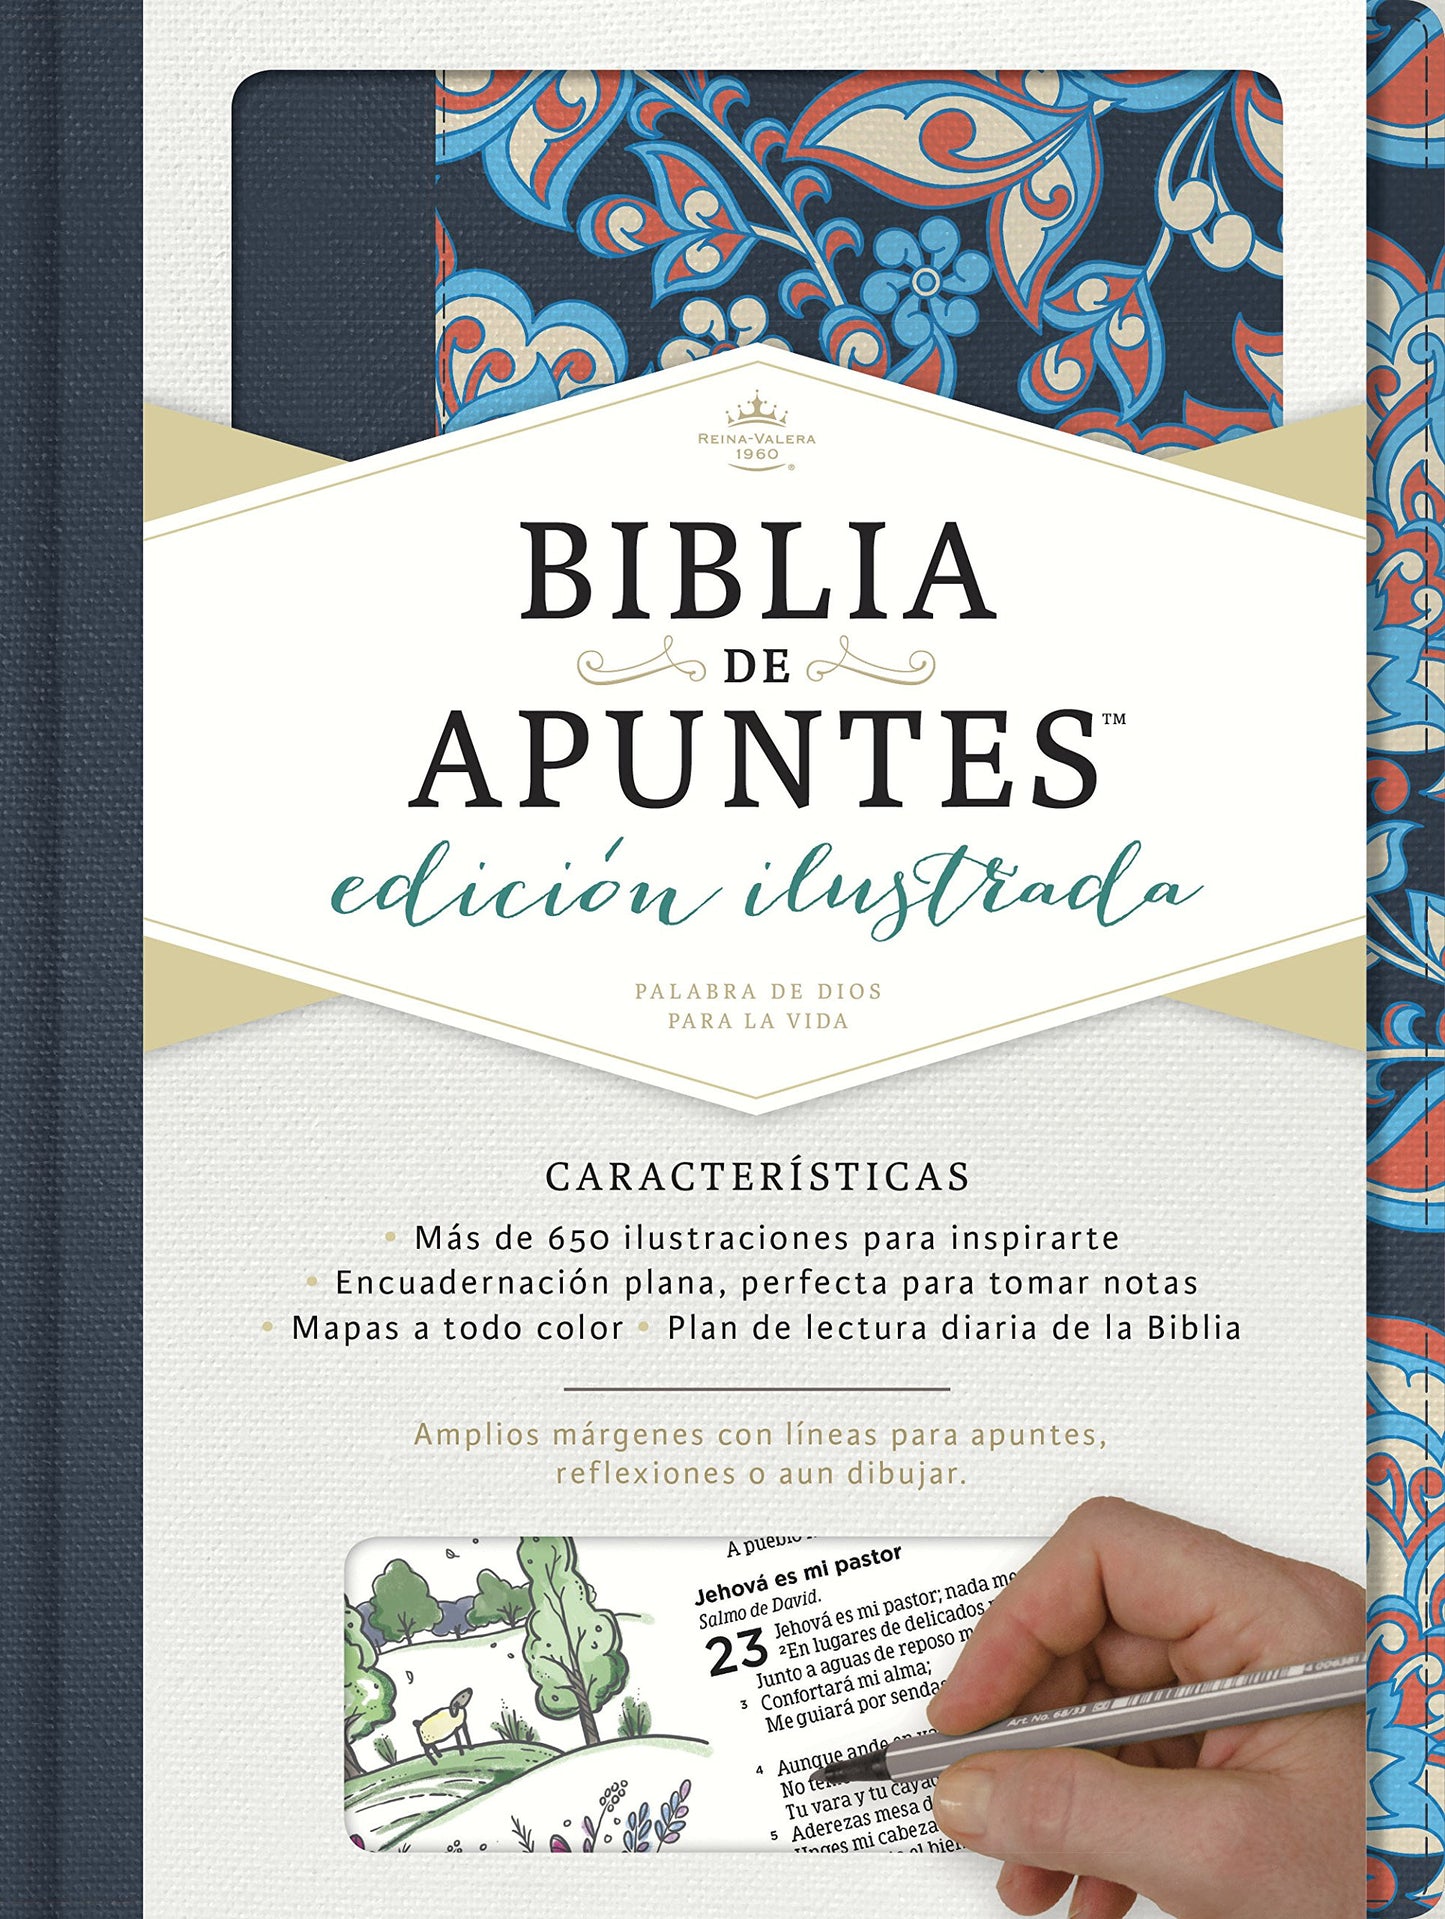 Biblia Reina Valera 1960 de Apuntes, Edición ilustrada. Tela en rosado y azul (Spanish Edition)